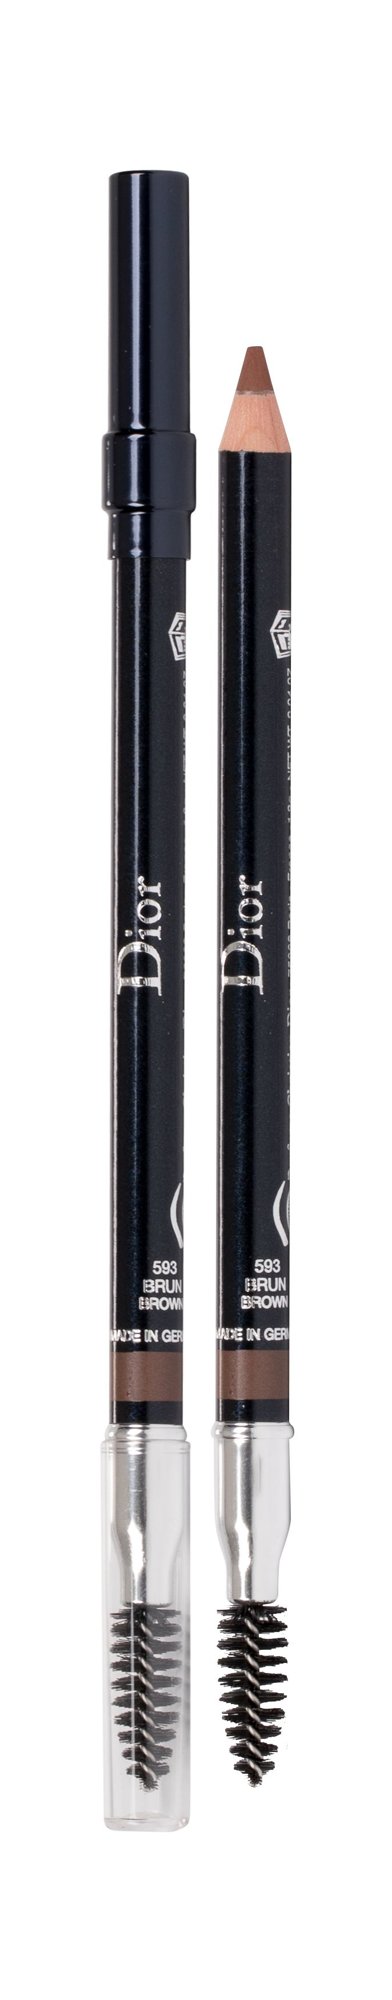 Christian Dior Sourcils Poudre antakių pieštukas